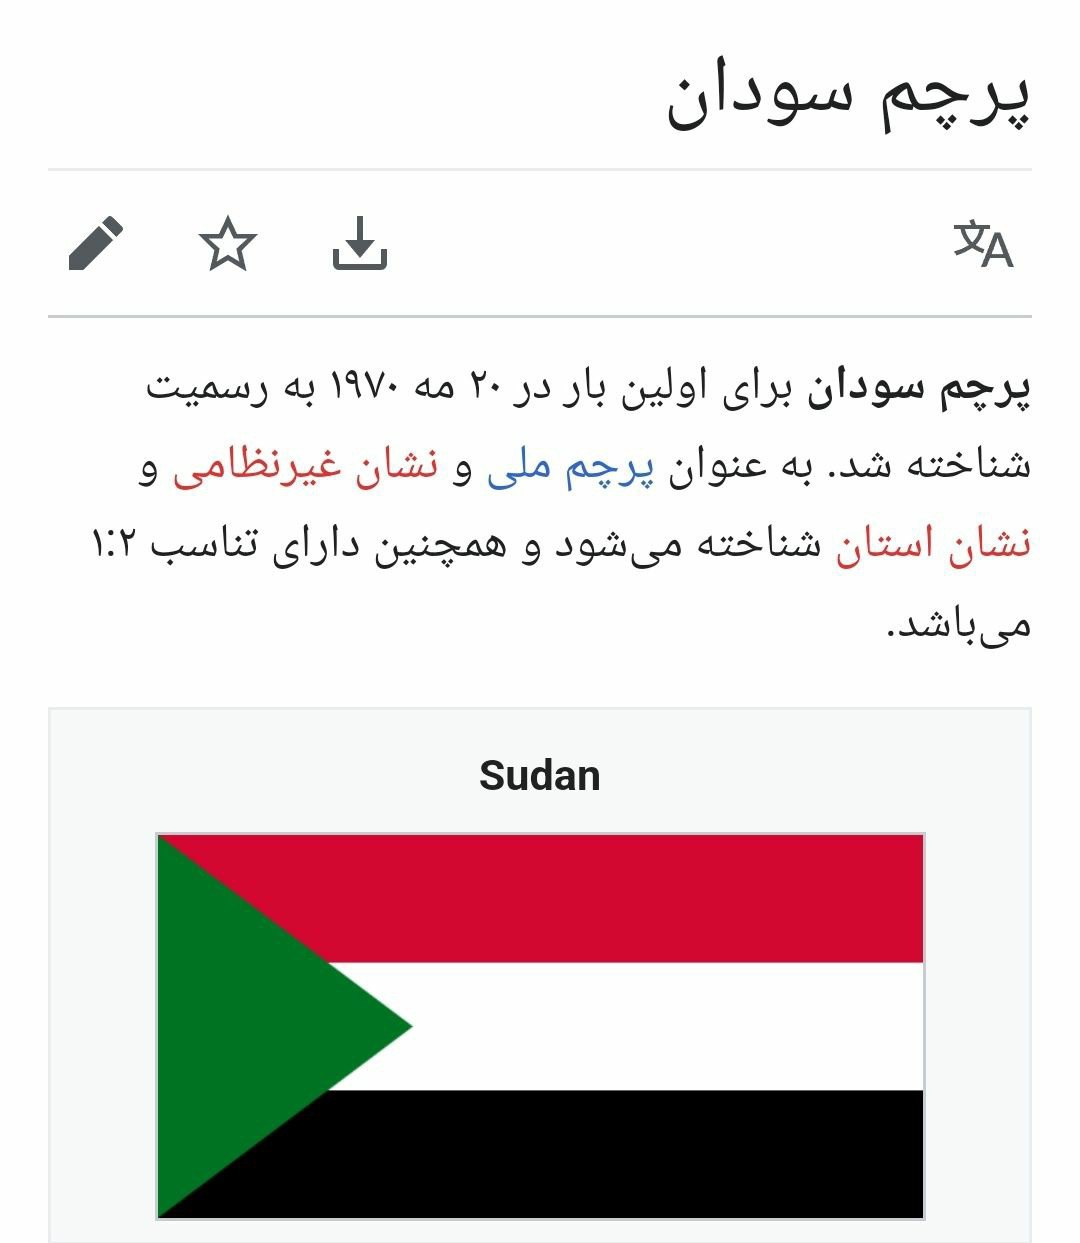 حمید صفت در استوری حمایت از مردم فلسطین و غزه به اشتباه پرچم کشور سودان را به جای فلسطین به کار برد.